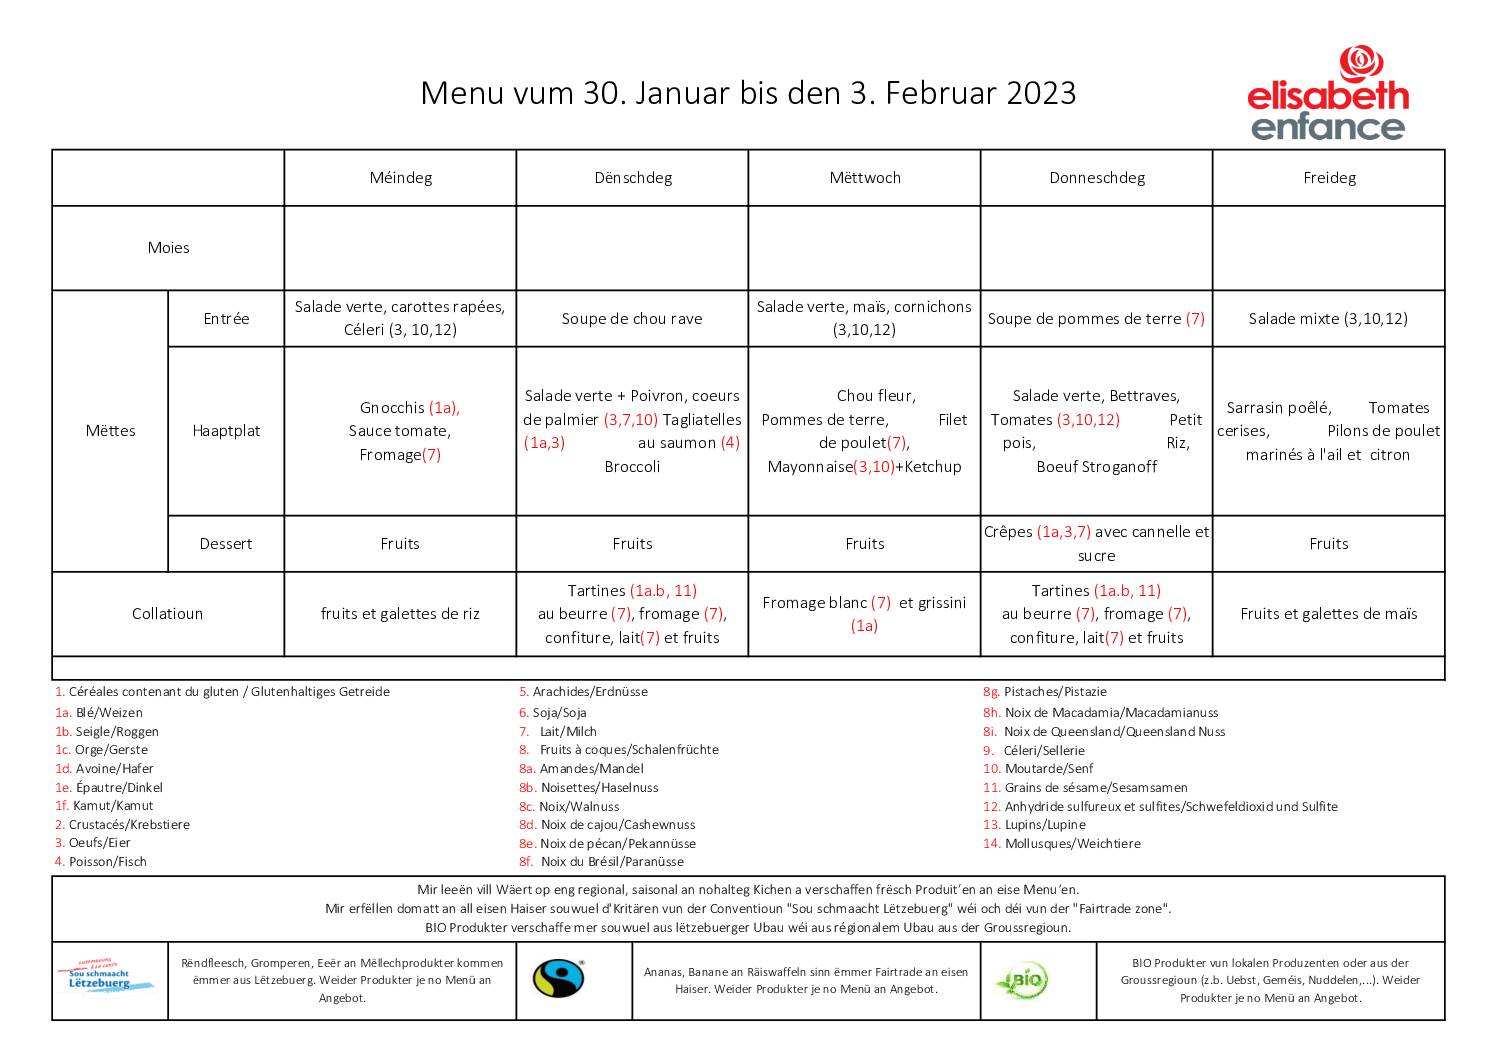 menus de la semaine du 30 janvier au 3 février 2023